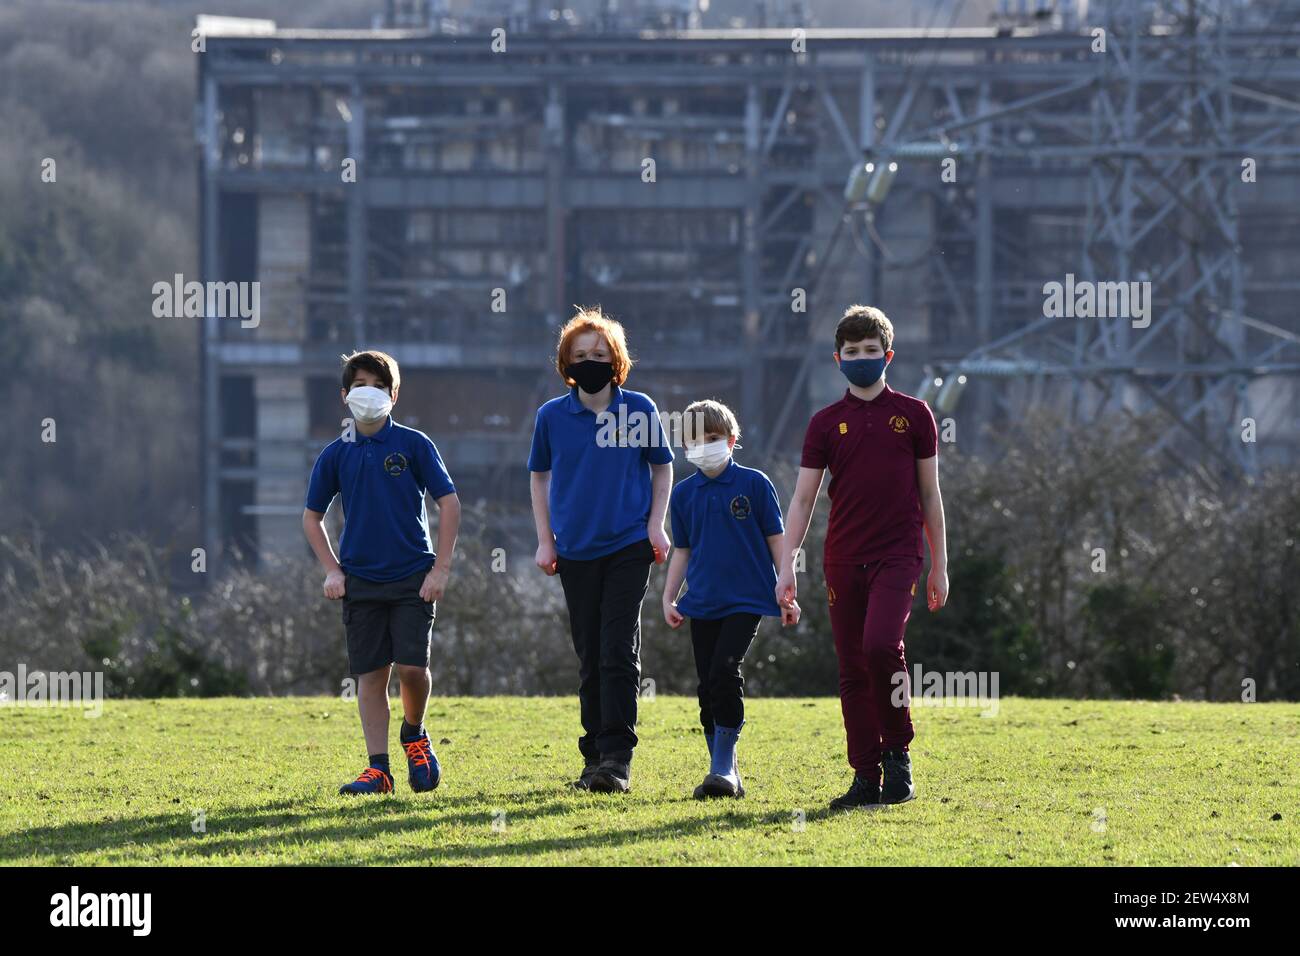 Schulkinder, die während einer Pandemie in der Nähe eines Industriestandorts mit Gesichtsmasken spazieren Großbritannien, Großbritannien, 2021 BILD VON DAVID BAGNALL Stockfoto